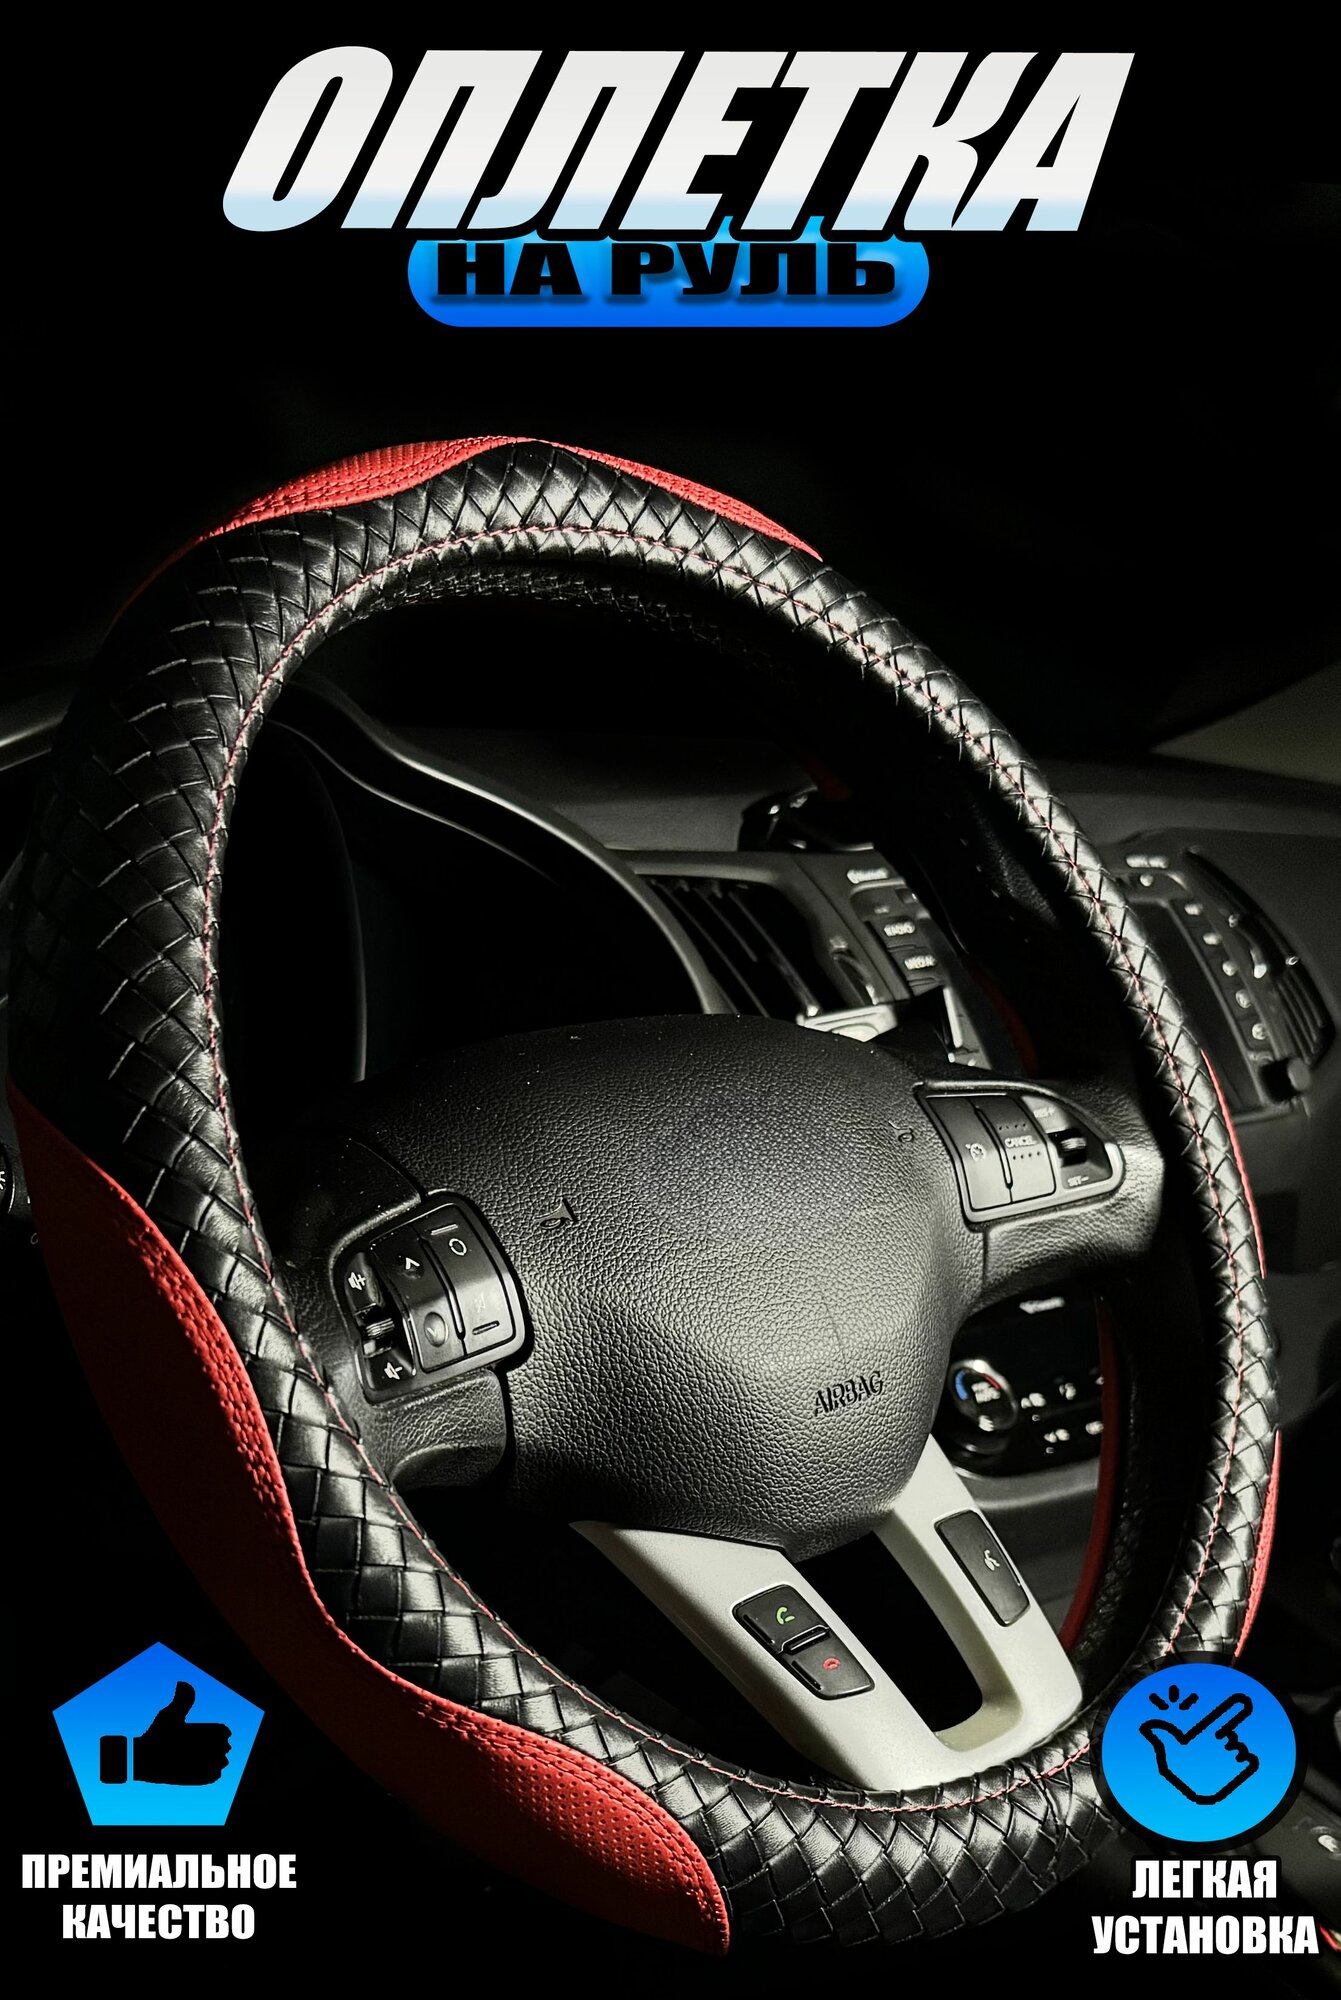 Оплетка, чехол (накидка) на руль Опель Корса (2006 - 2010) хэтчбек 5 дверей / Opel Corsa, экокожа, Черный и красный